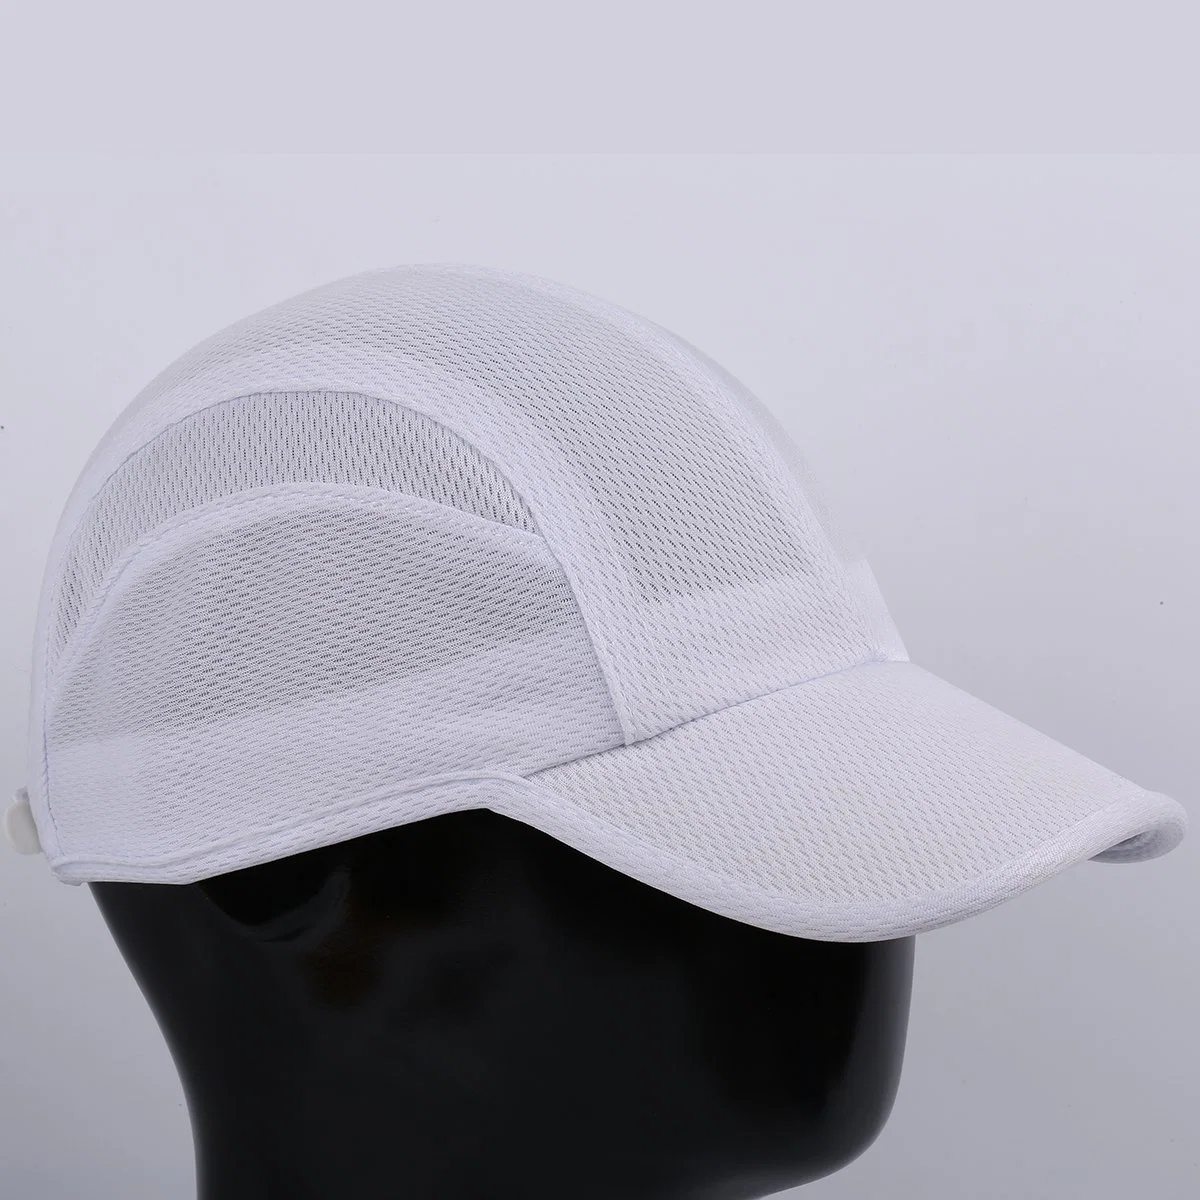 Ligero personalizado de malla exterior de verano Deportes sombreros gorros deportivos ajustables